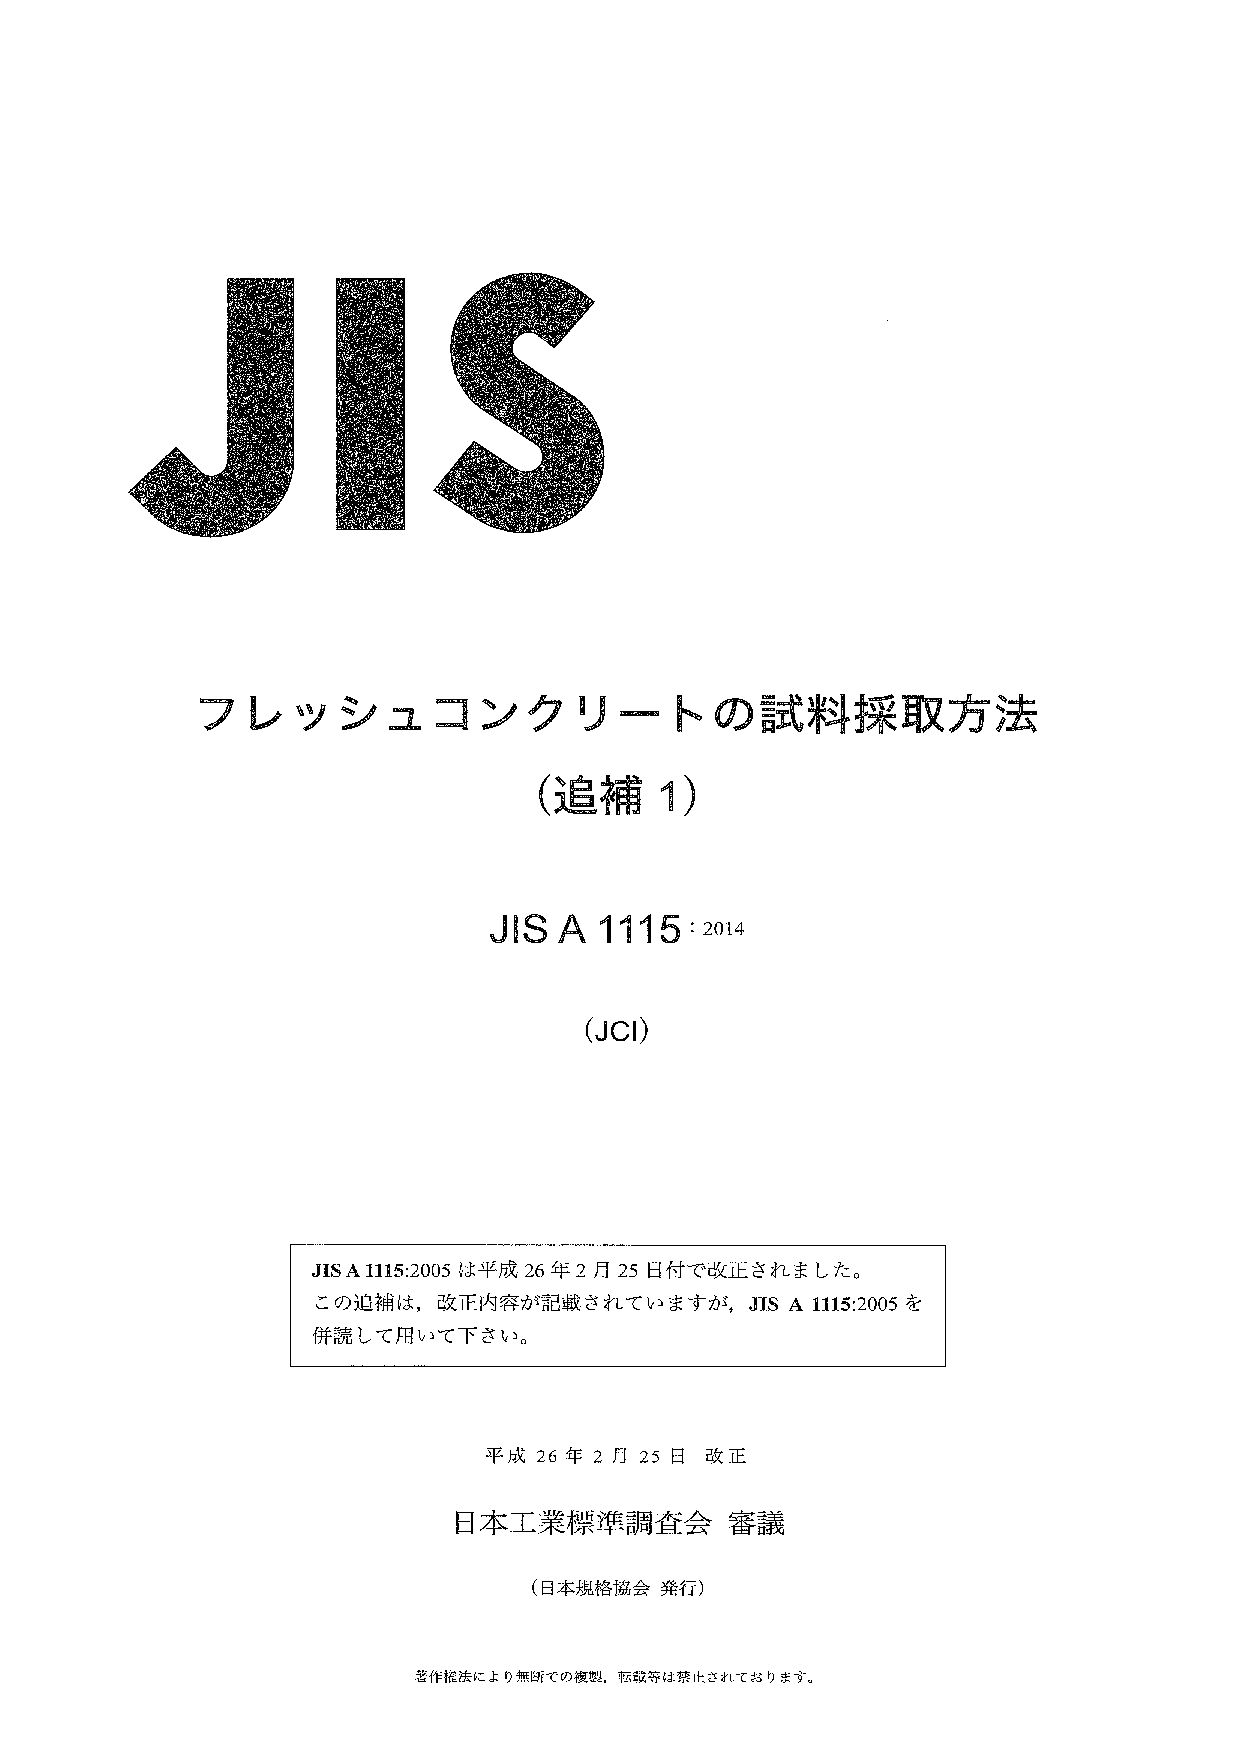 JIS A1115 AMD 1-2014